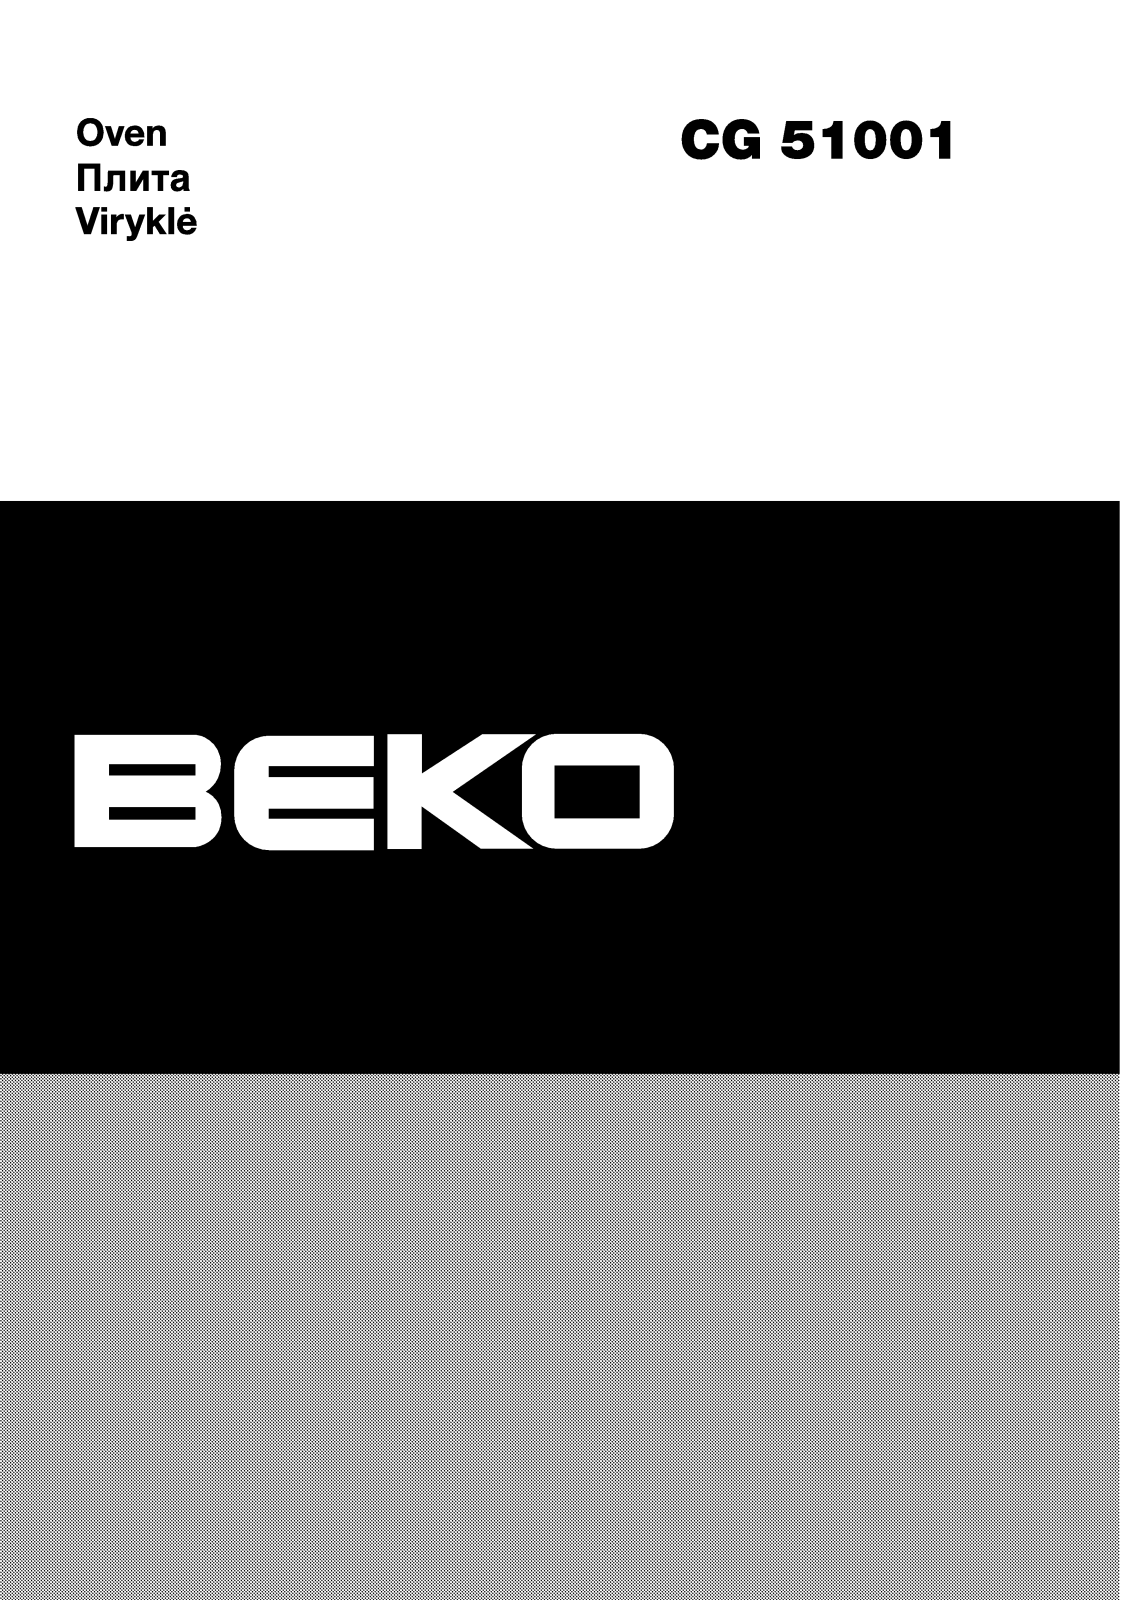 Beko CG 51001 User Manual